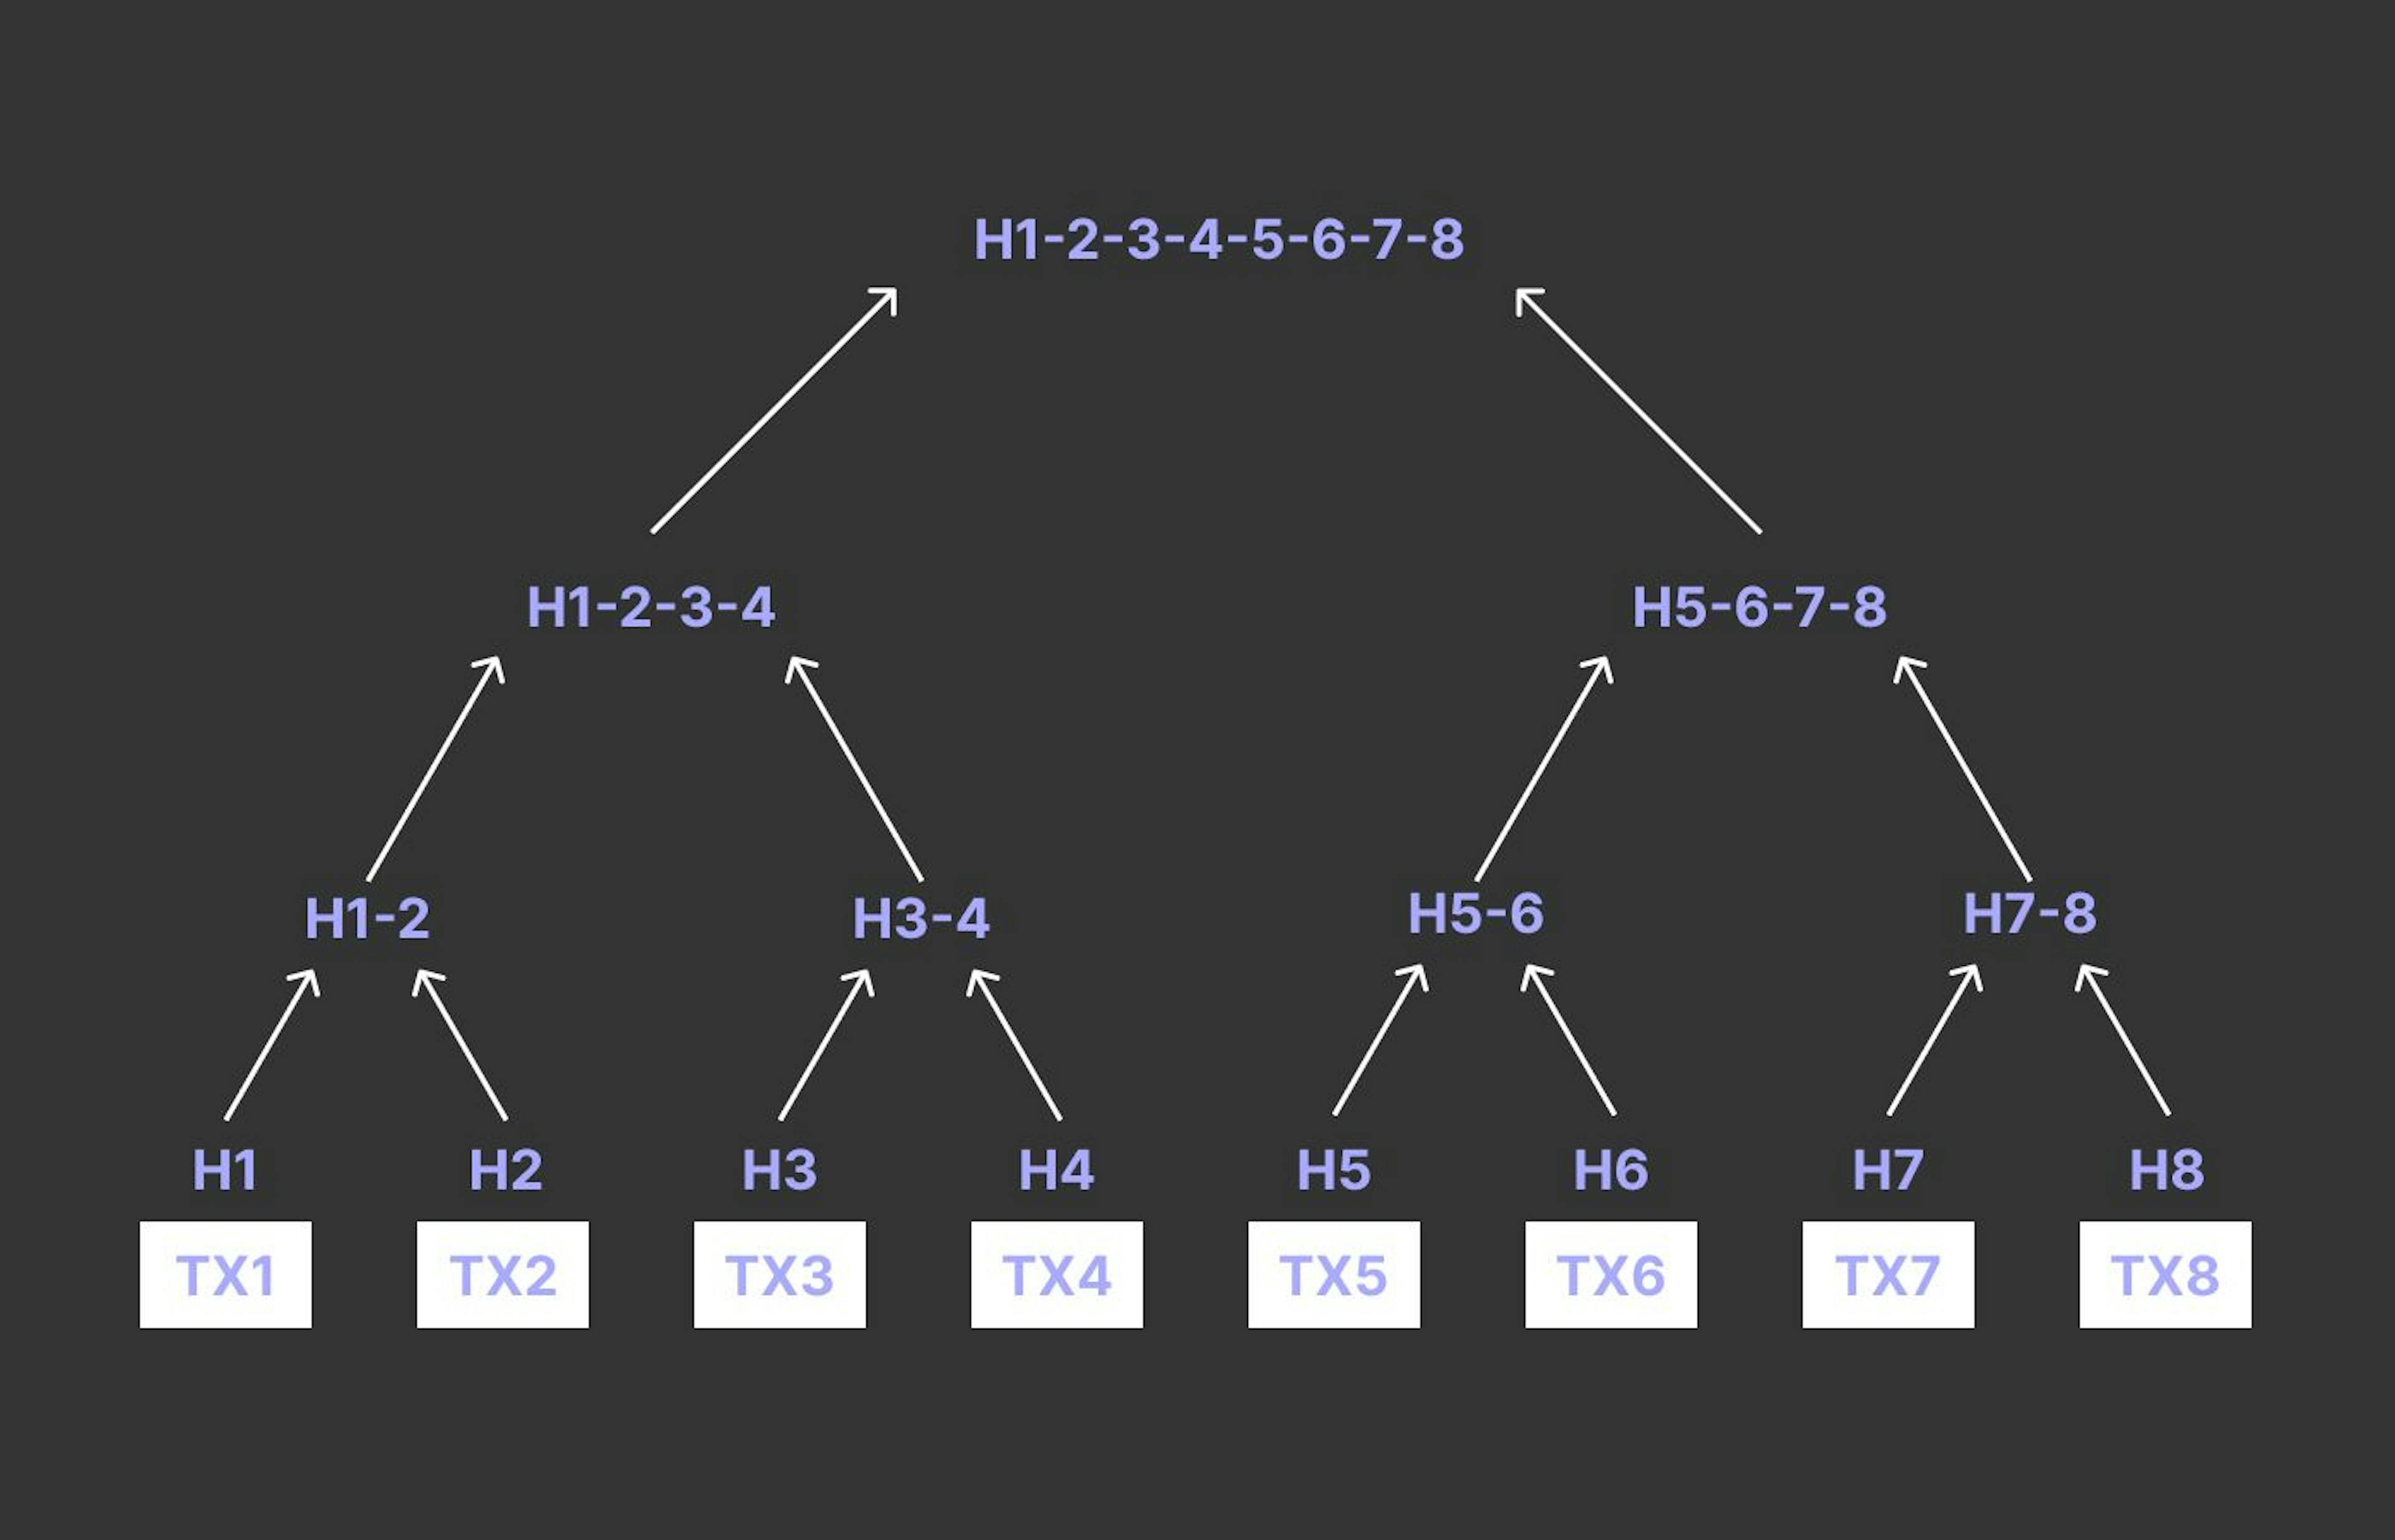 Merkle Tree baseada em transações